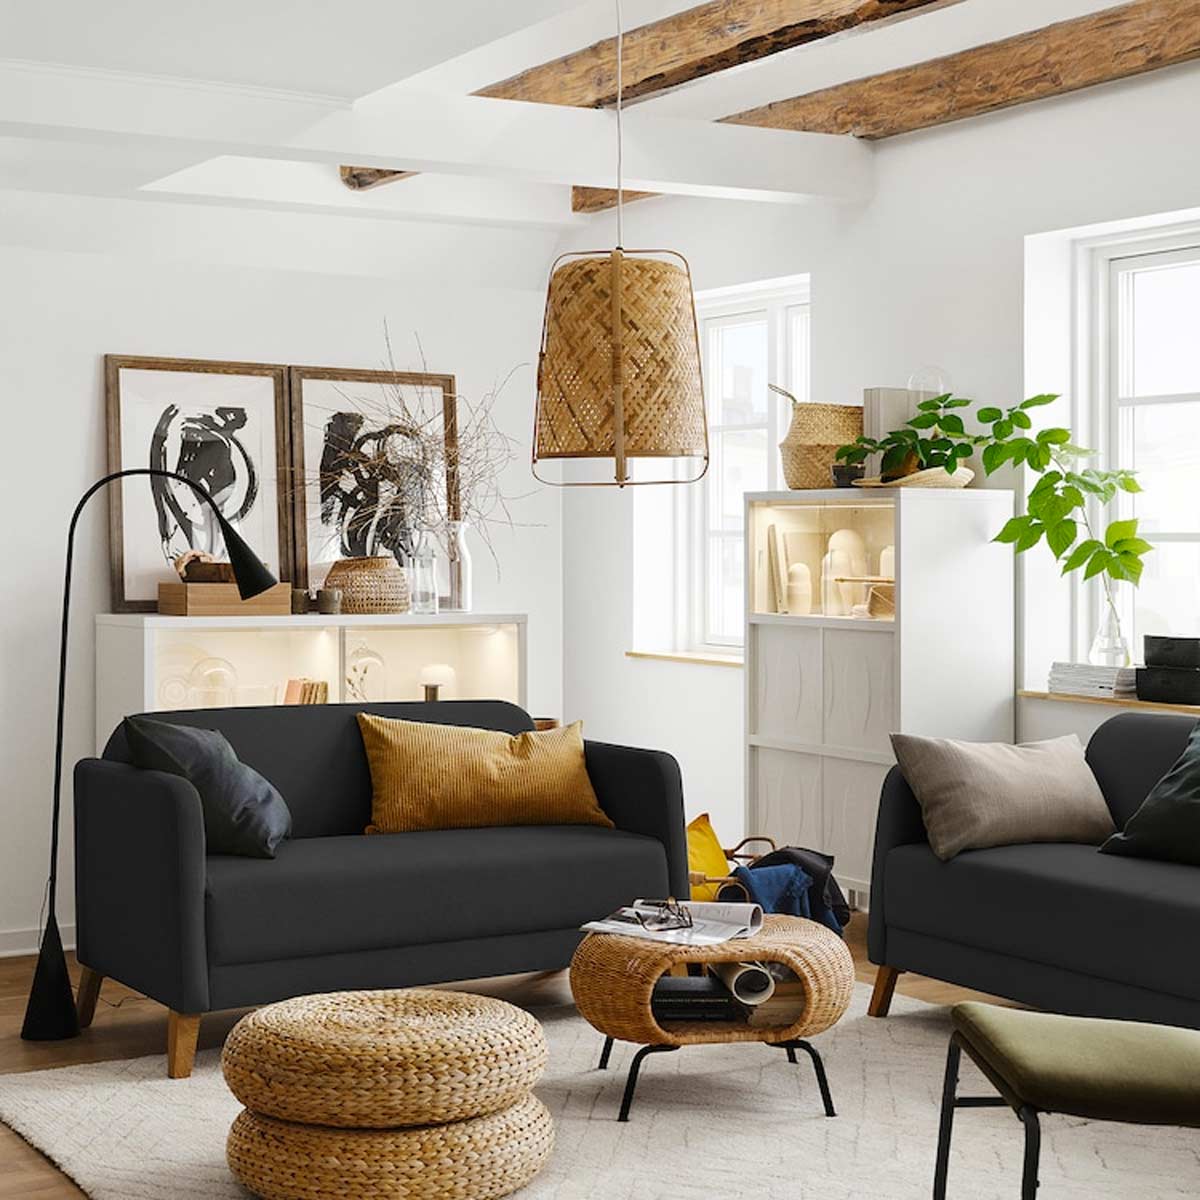 Soggiorni Ikea: il divano, spazio alla comodità